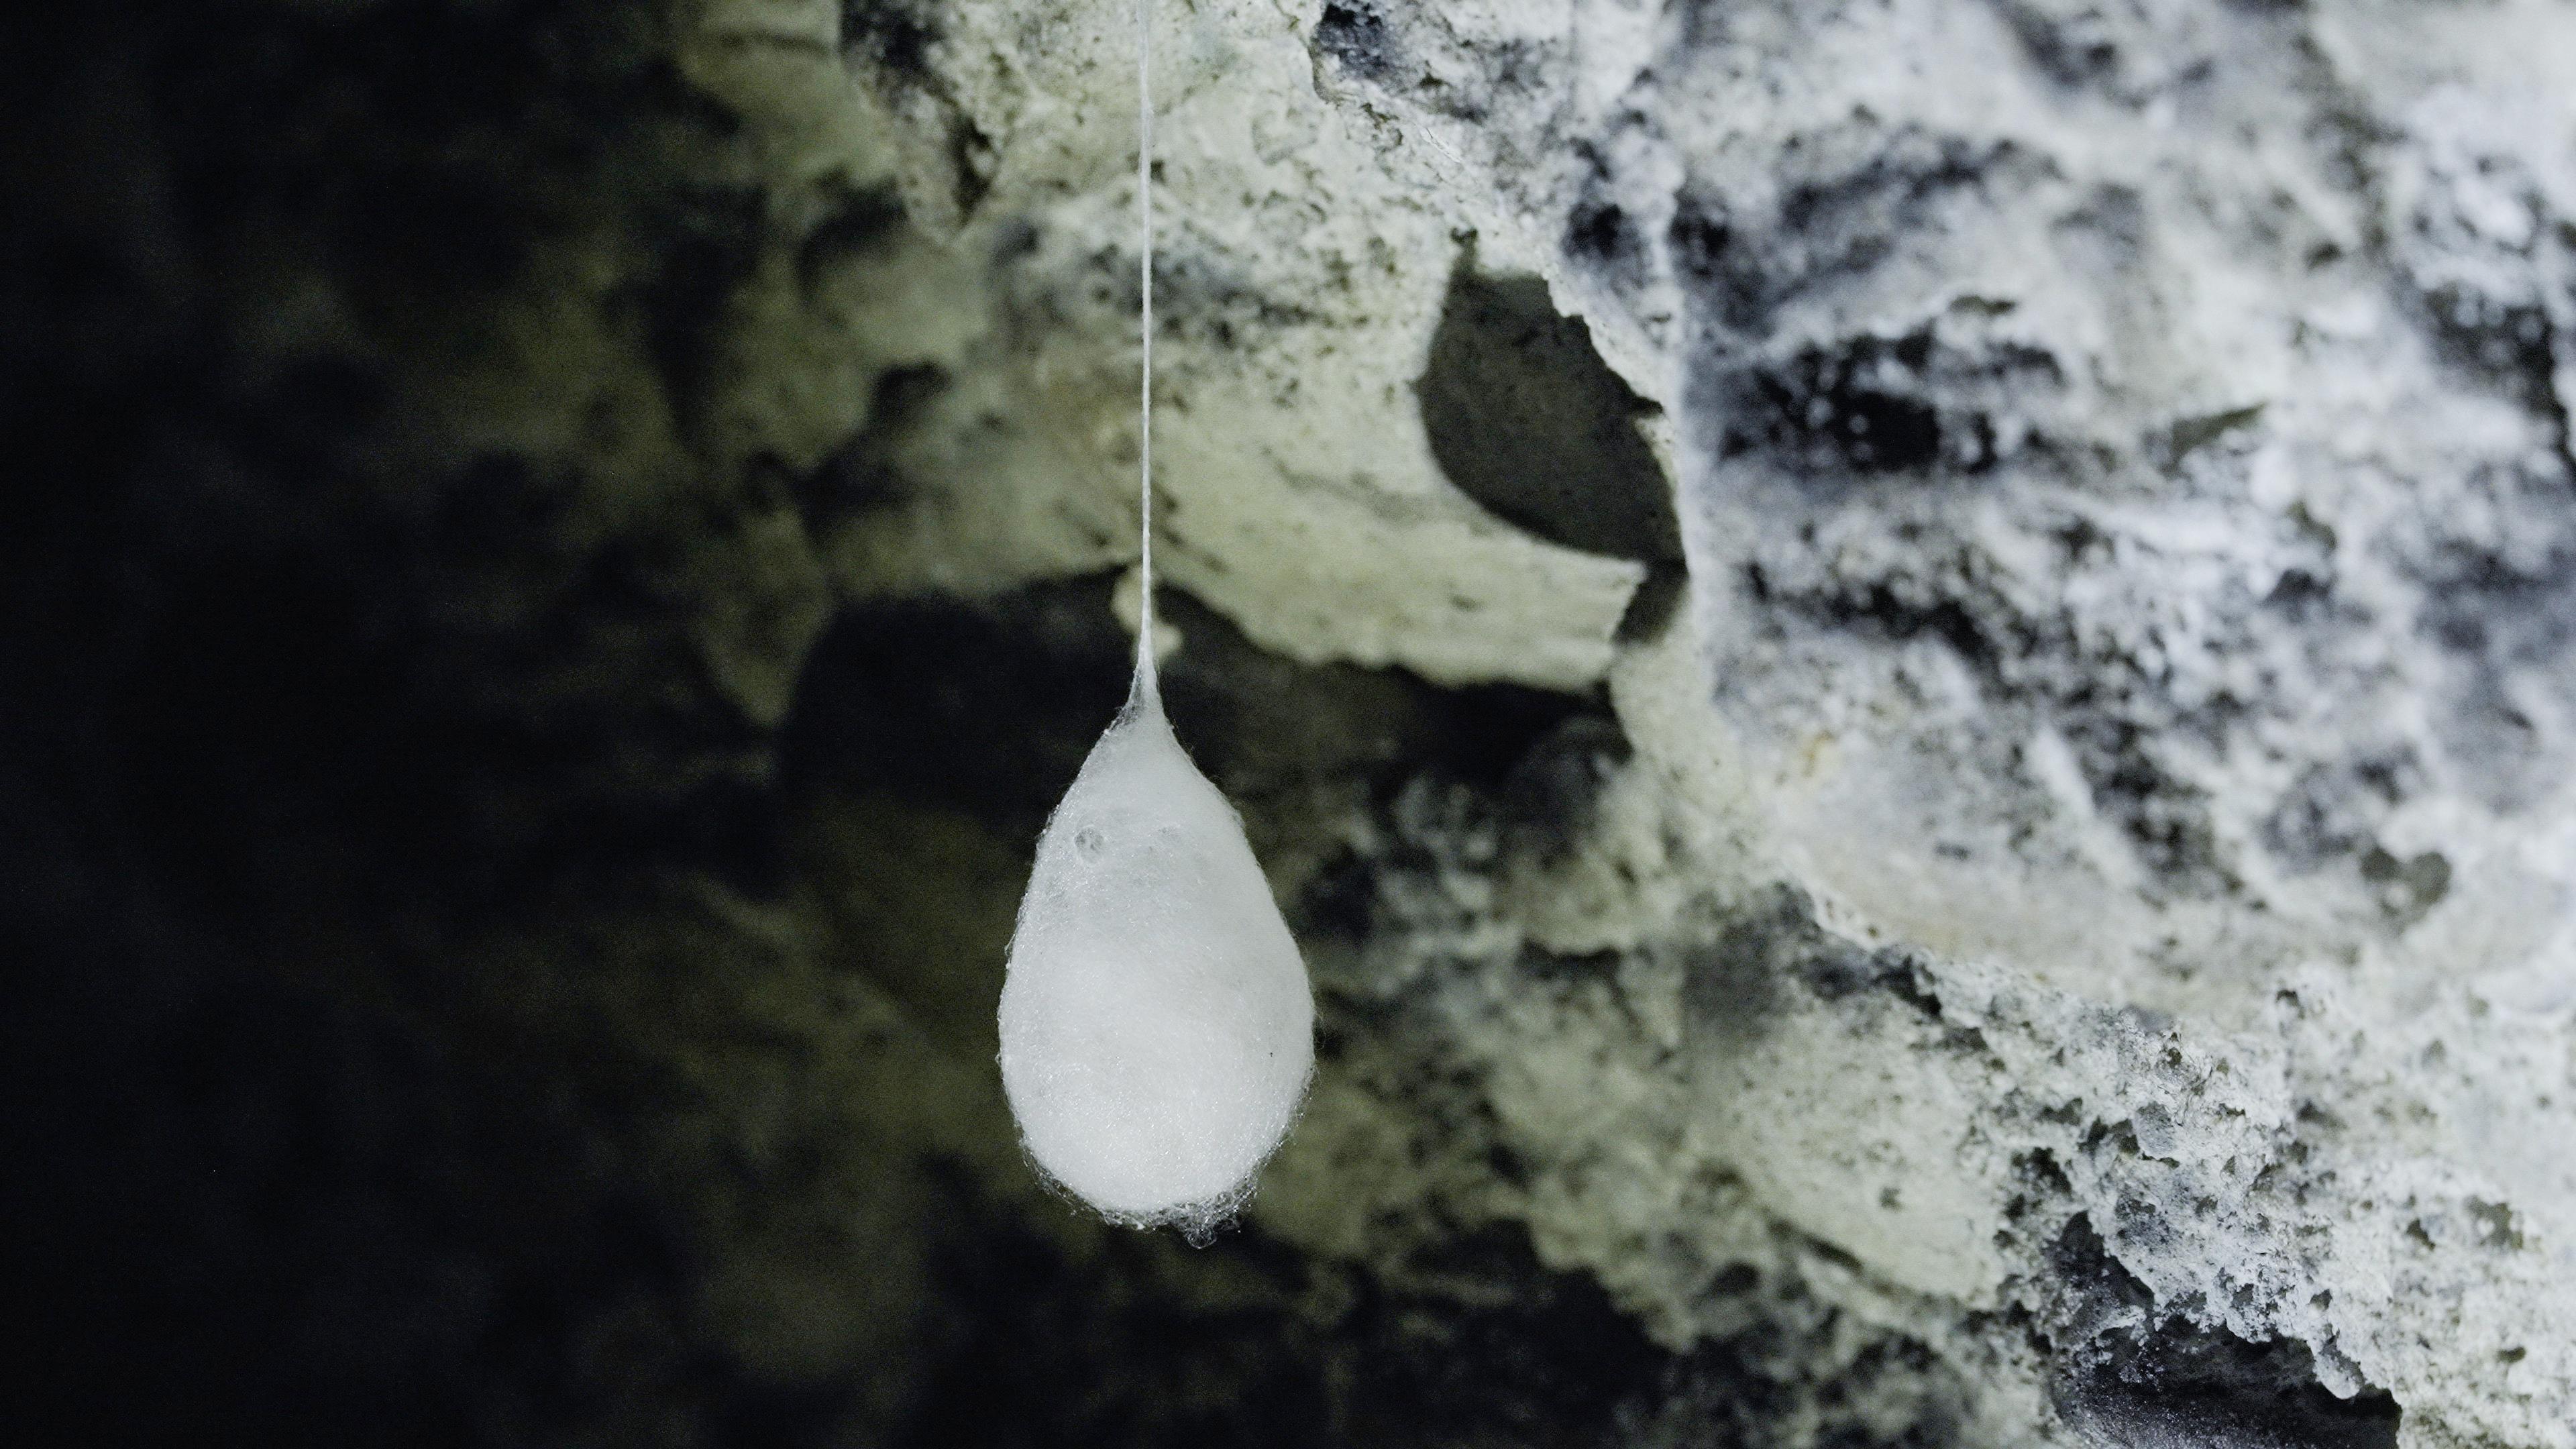 A Genève, dans une grotte, un cocon d'une araignée cavernicole, la Meta menardi, contenant entre 200 et 300 œufs. [RTS]